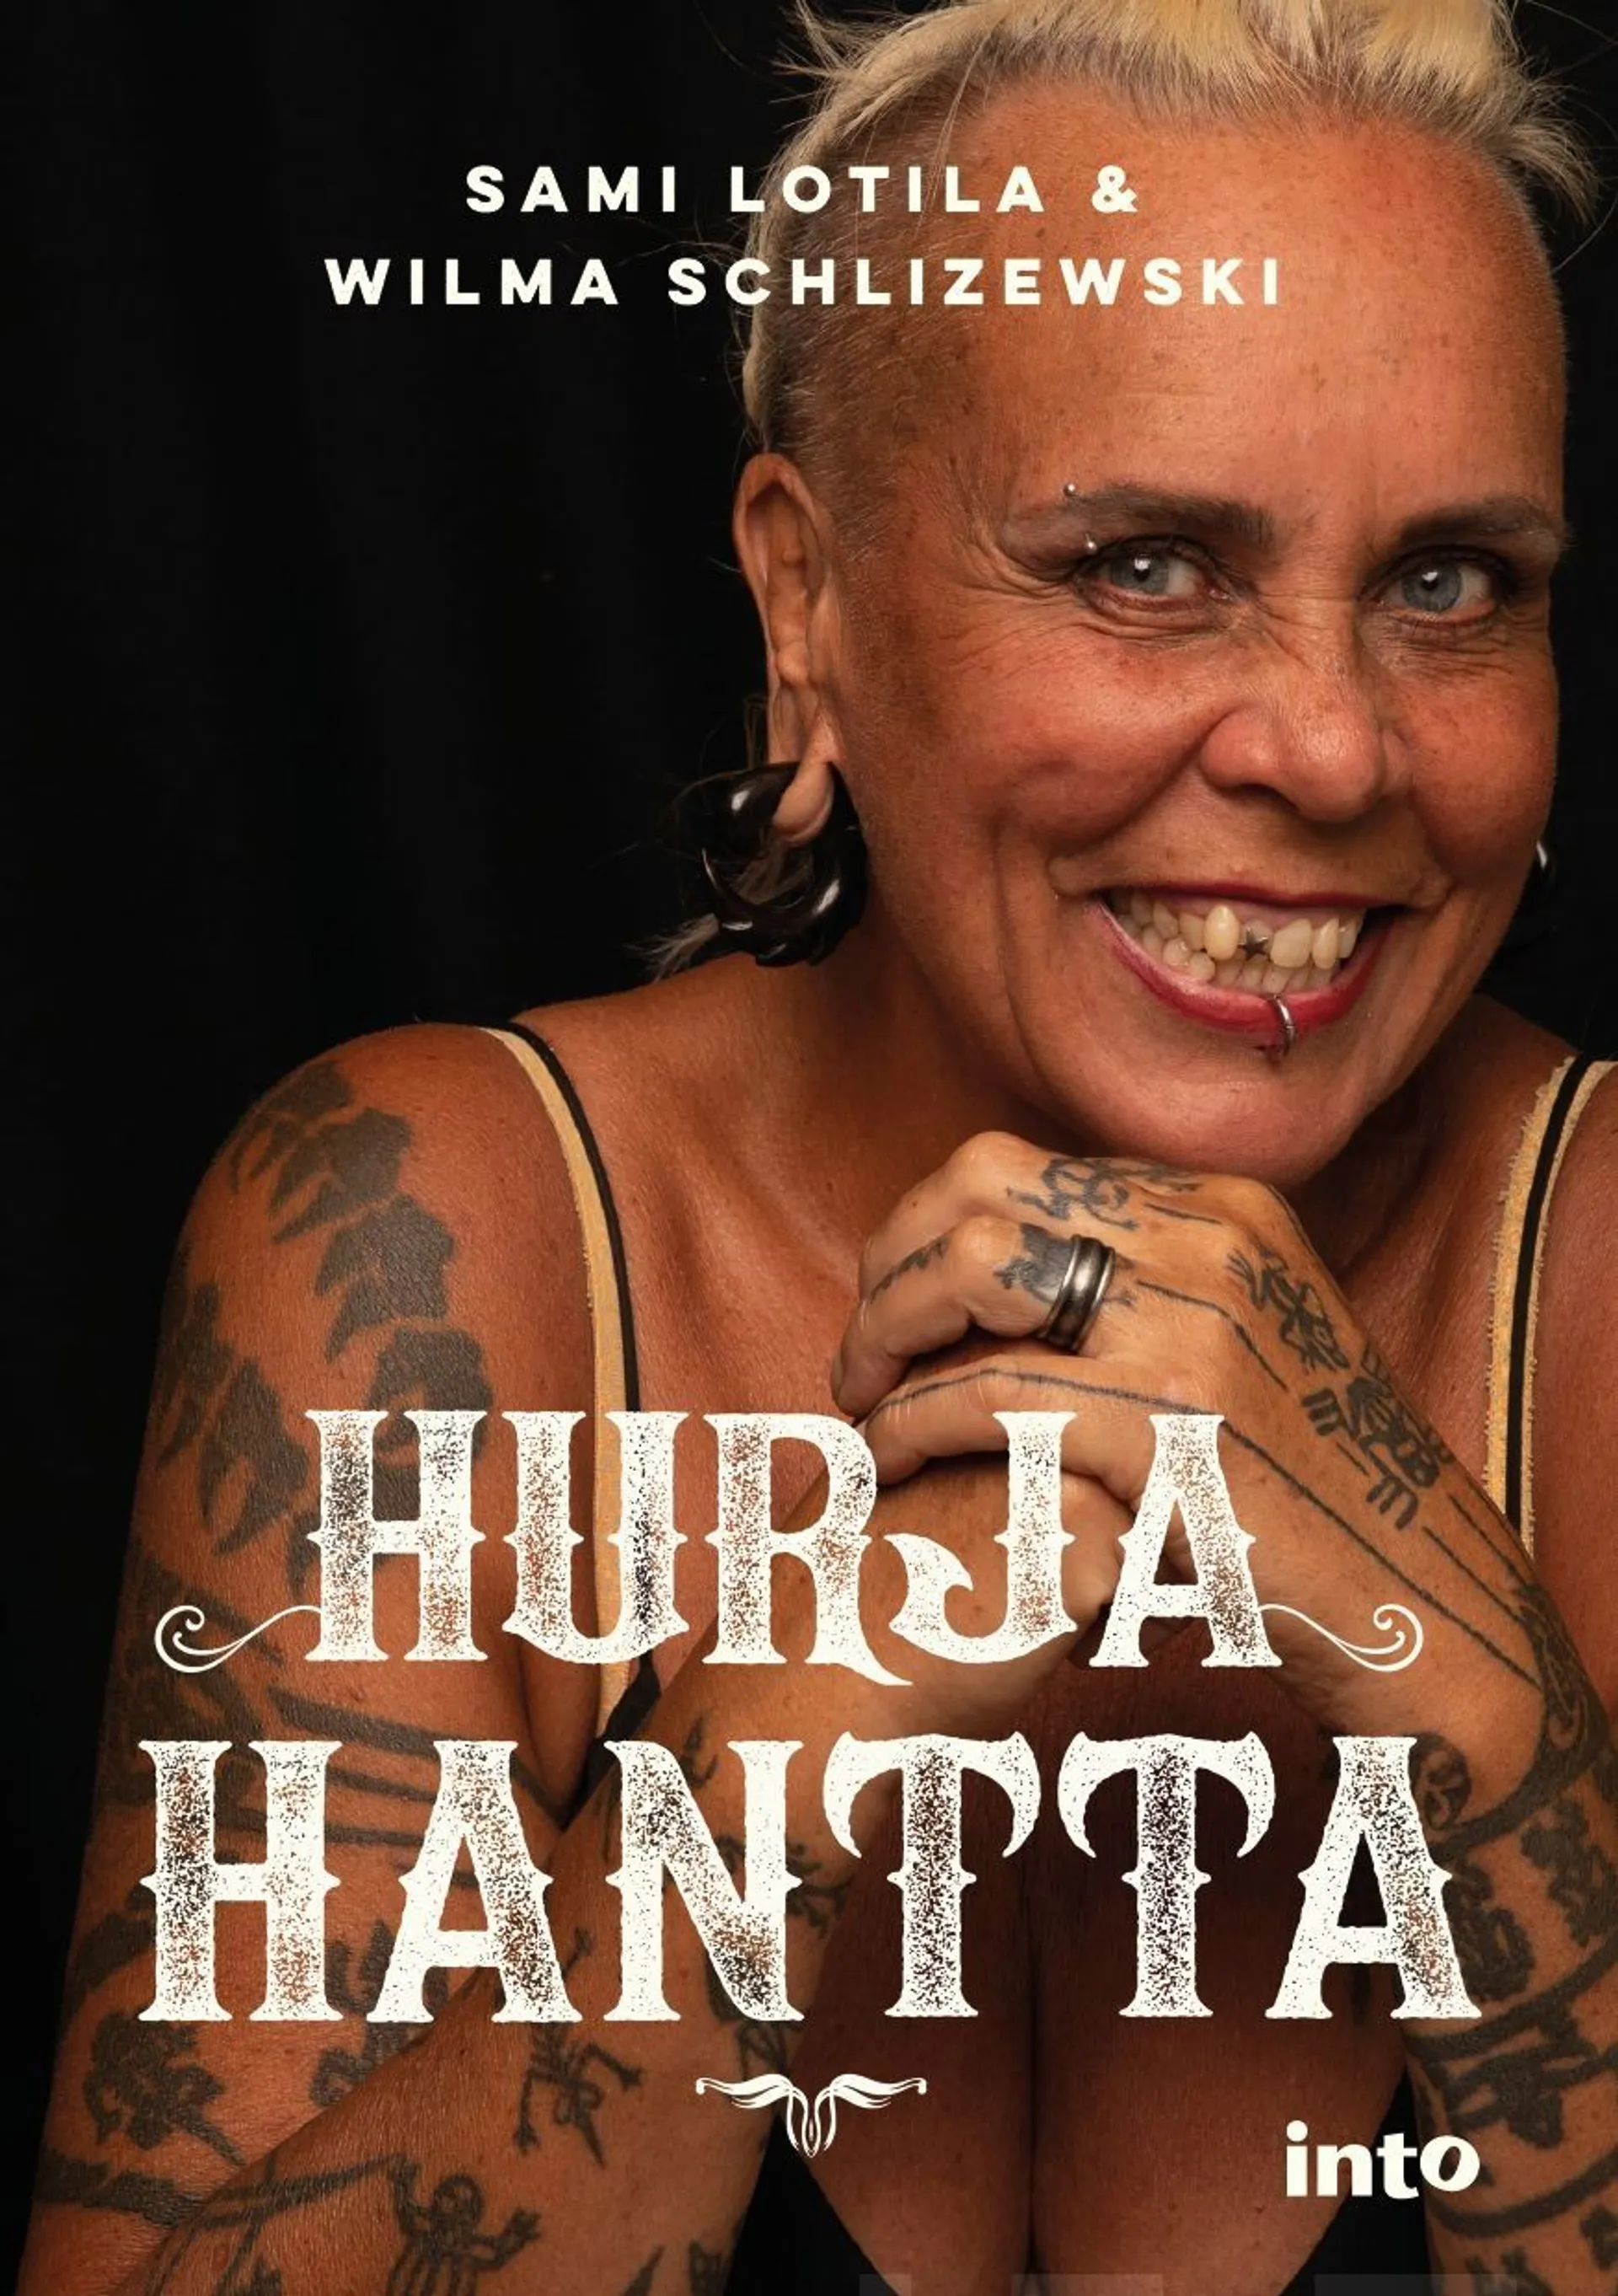 Lotila, Hurja Hantta